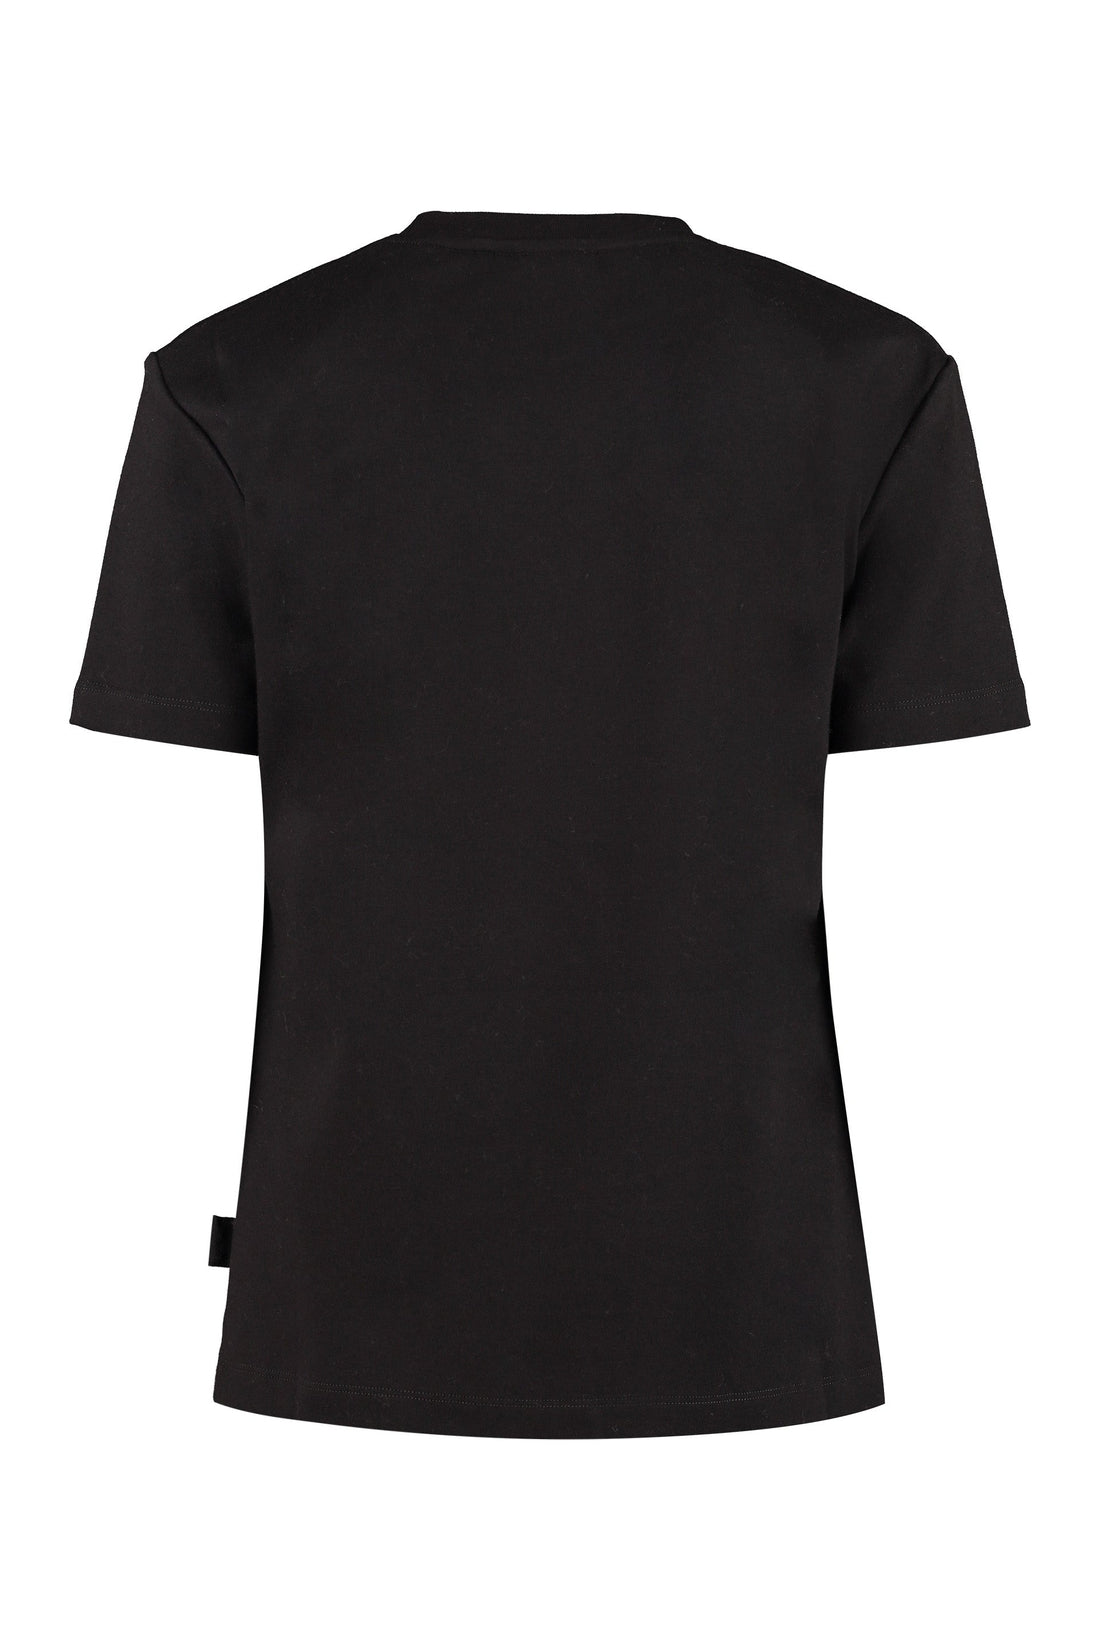 GCDS-OUTLET-SALE-Cotton T-shirt-ARCHIVIST